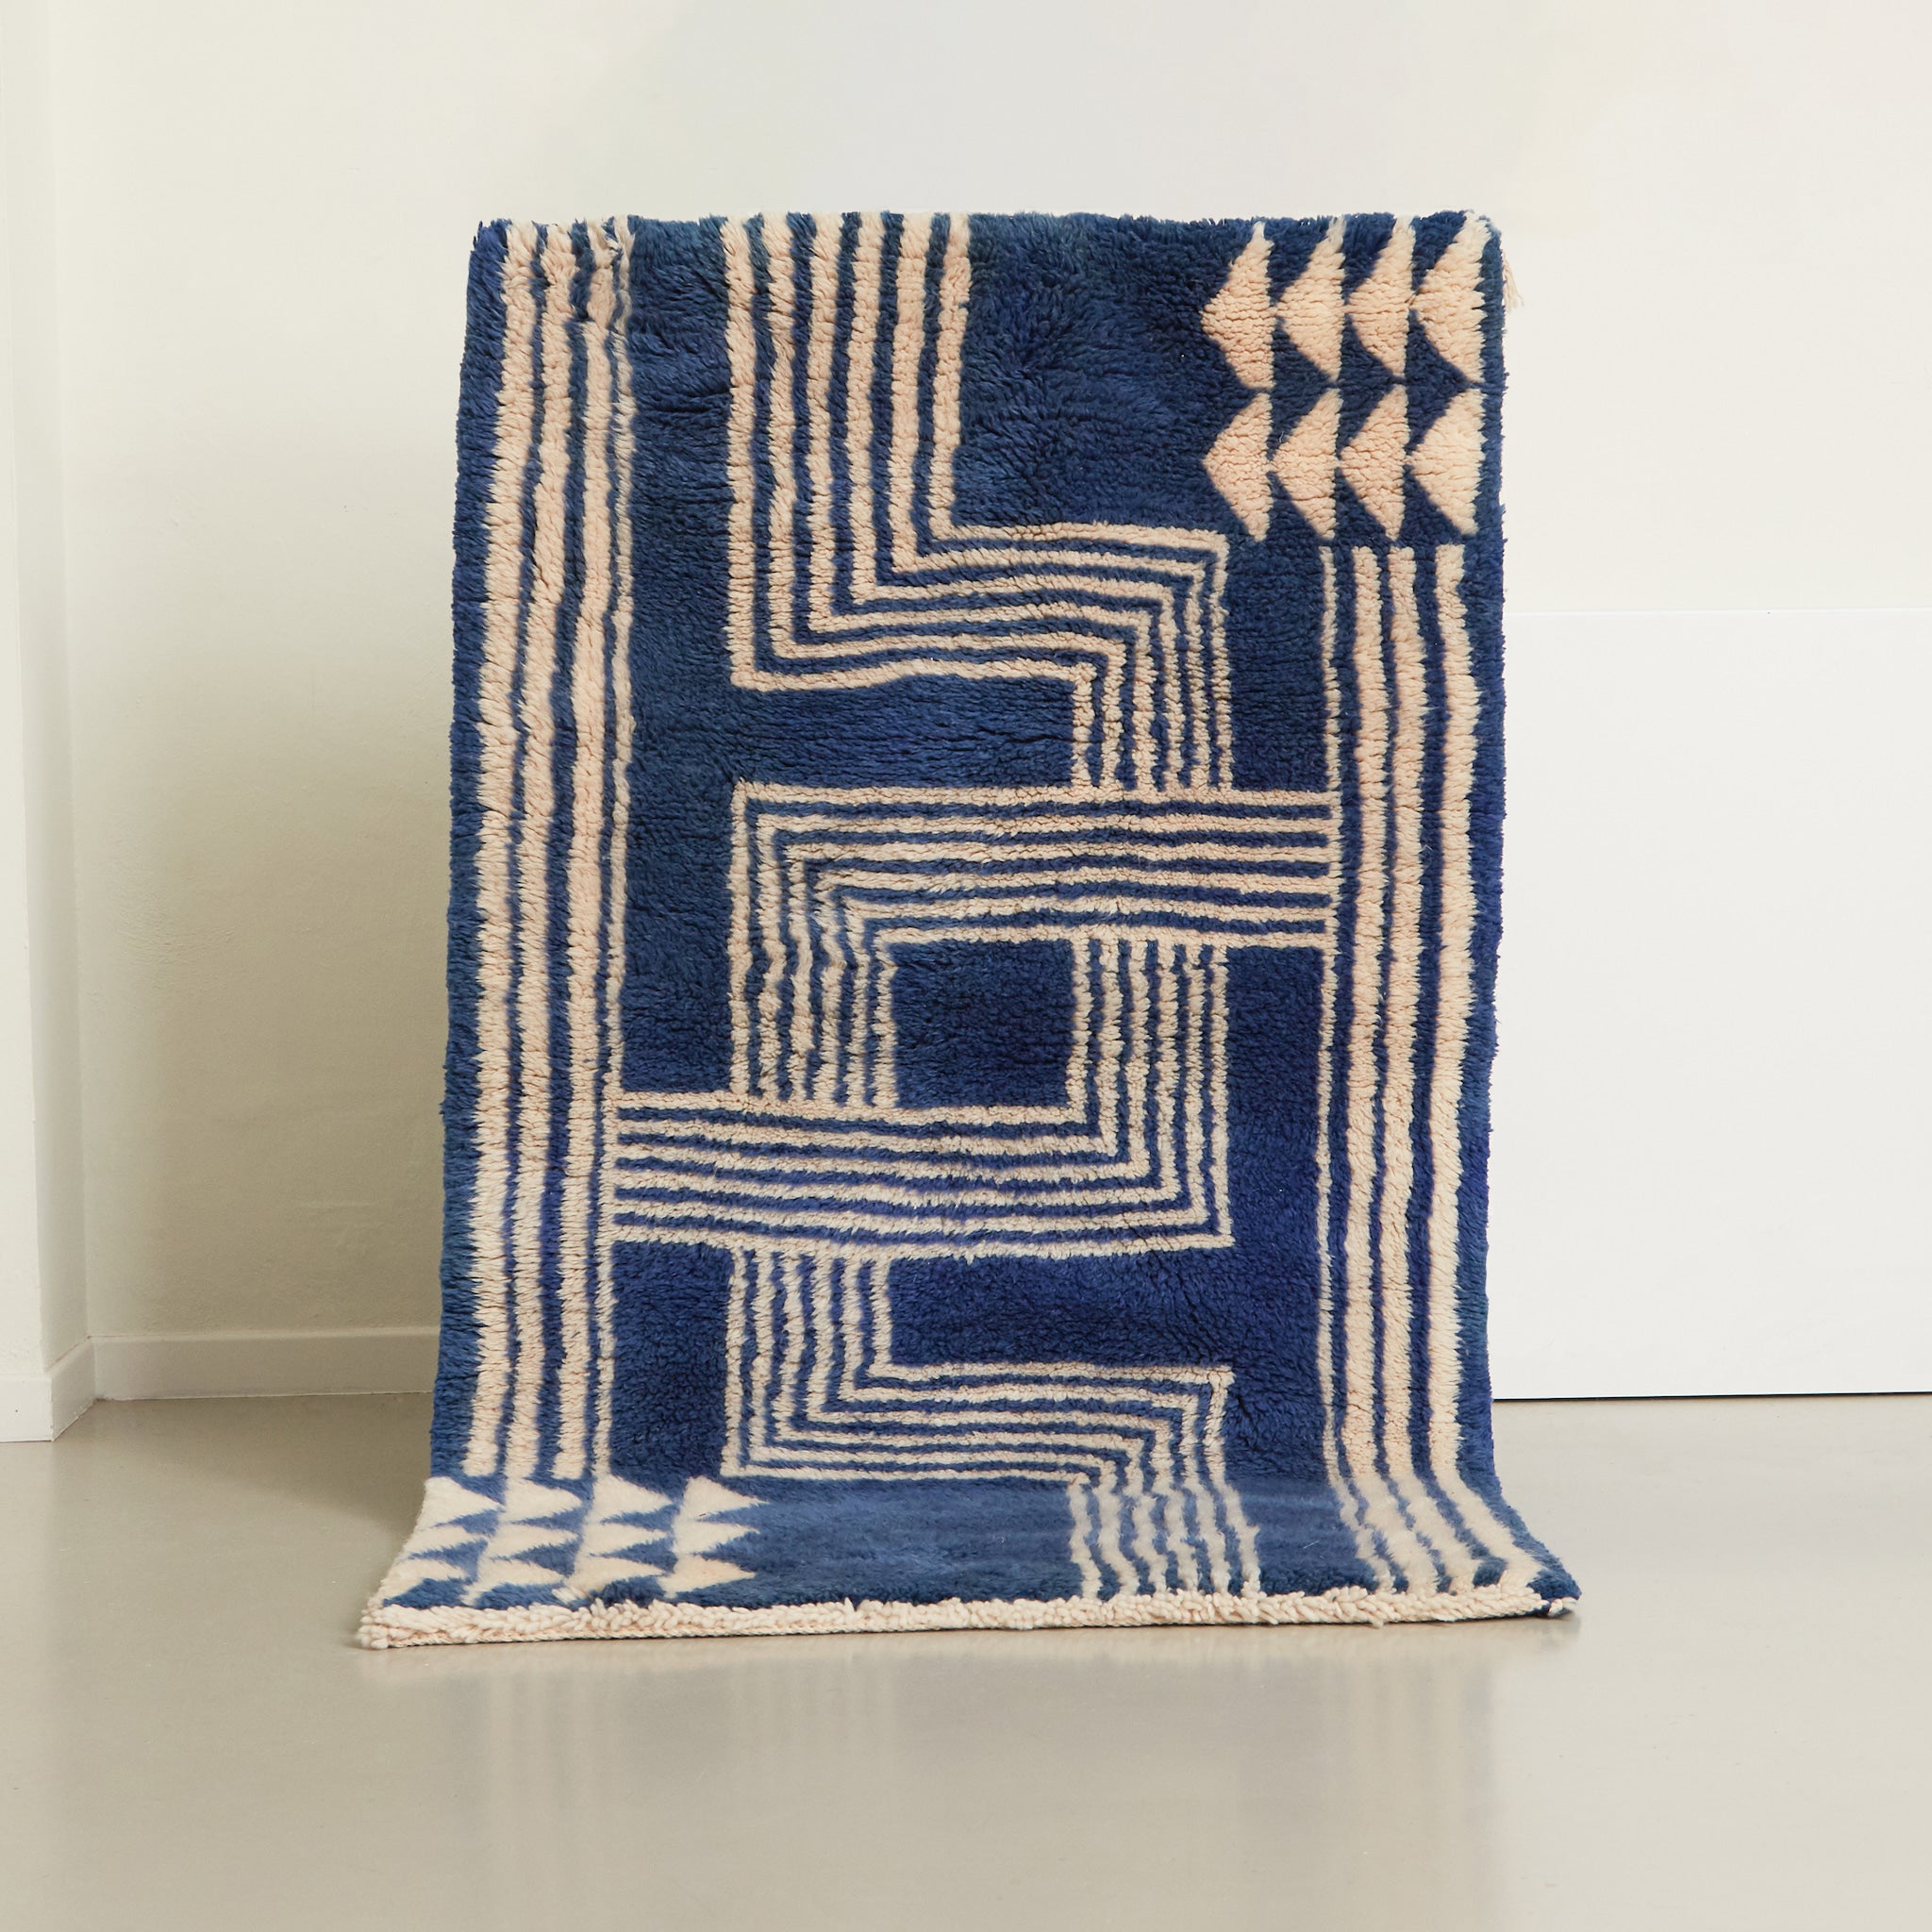 tappeto beni mrirt dal pelo lungo e soffice realizzato con una base di lana blu e dei disegni geometrici bianchi